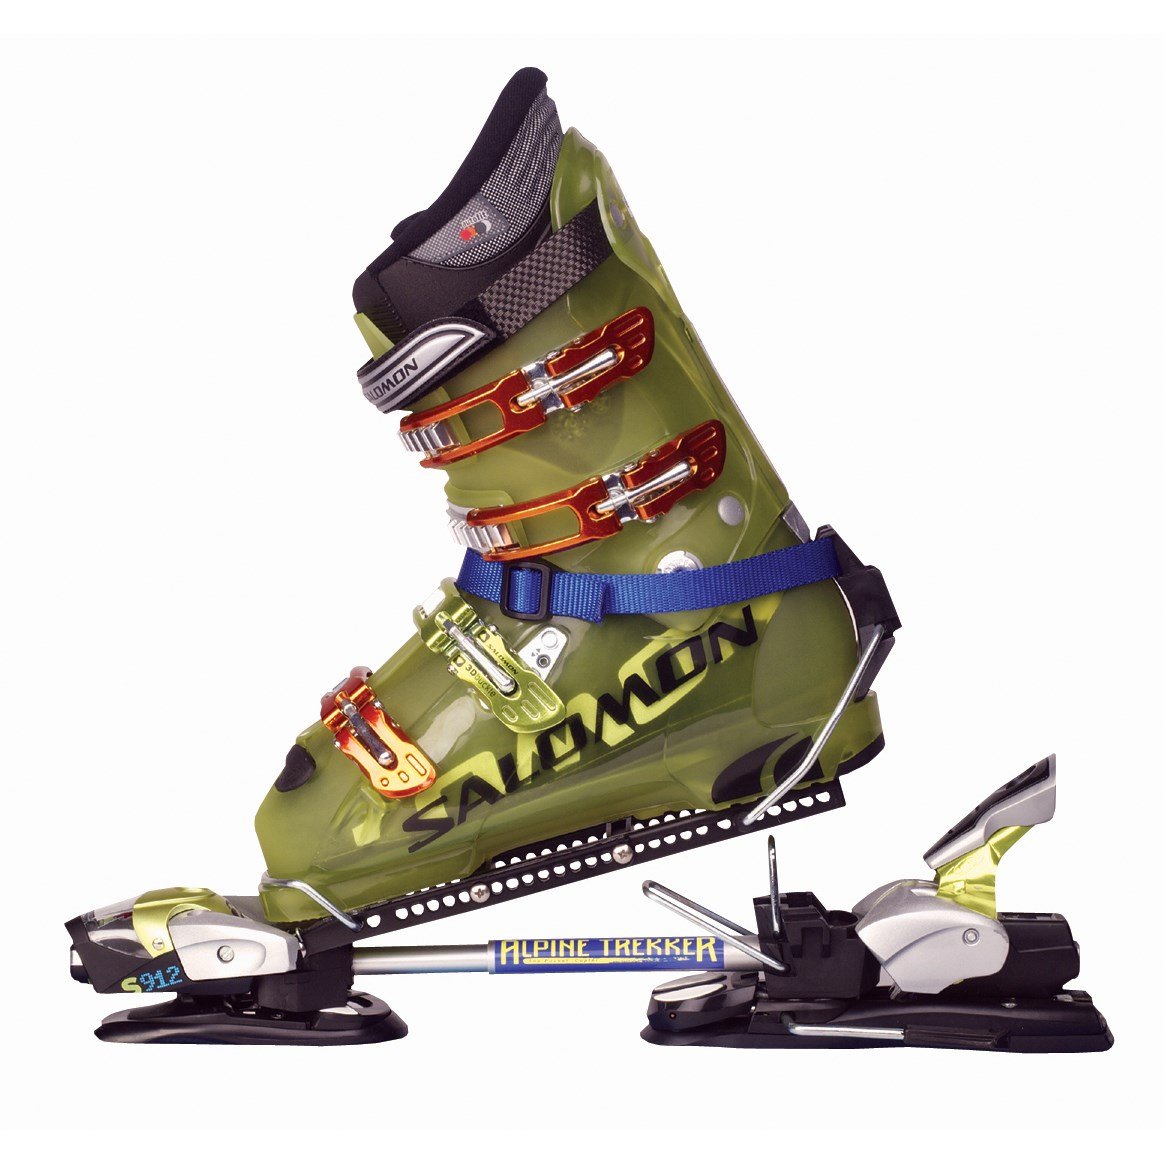 Как крепить лыжи к ботинкам